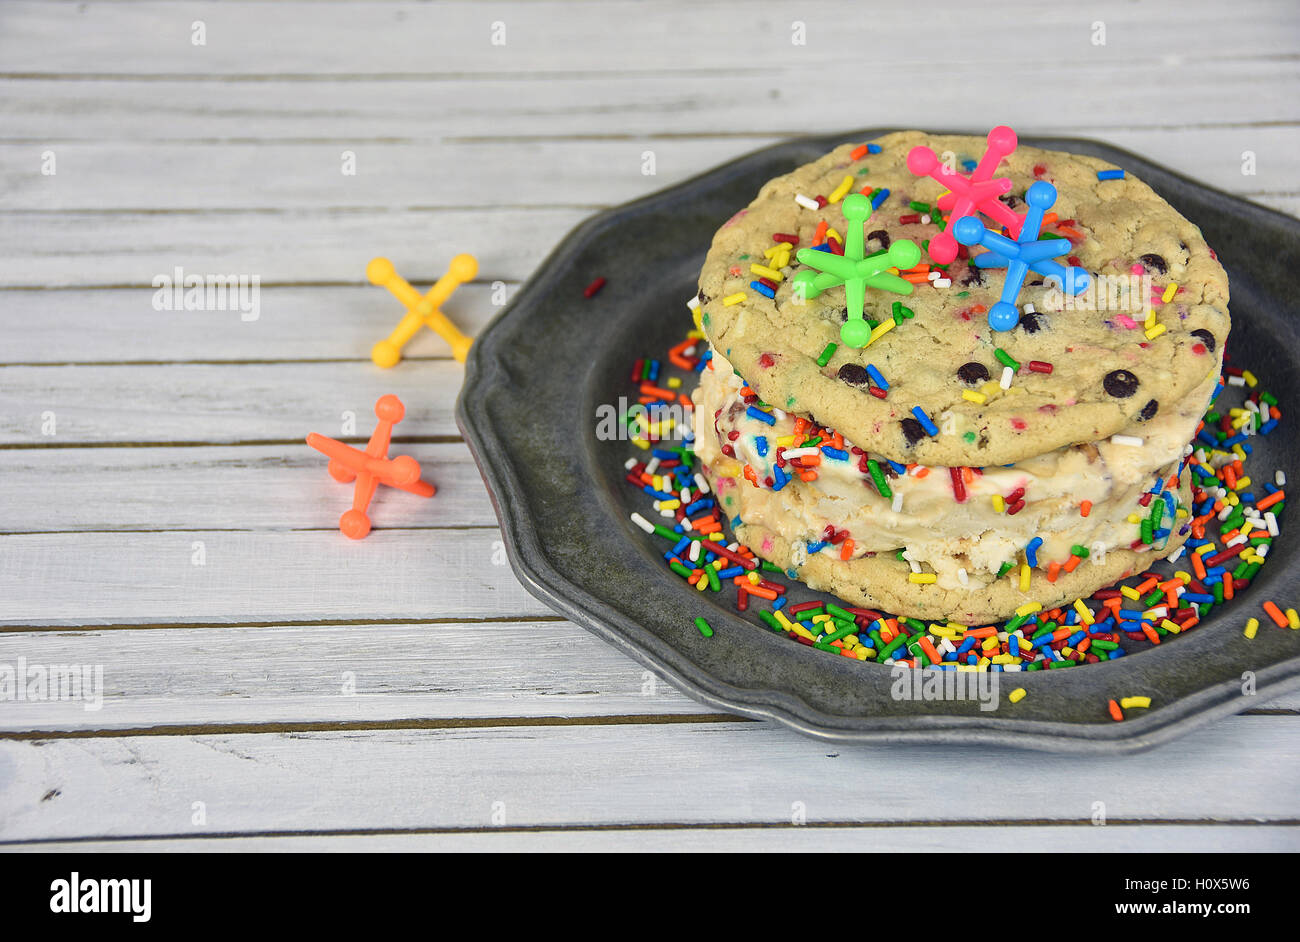 Martinetti giocattolo sul gelato a sandwich del cookie con rainbow spruzza sulla piastra in peltro Foto Stock